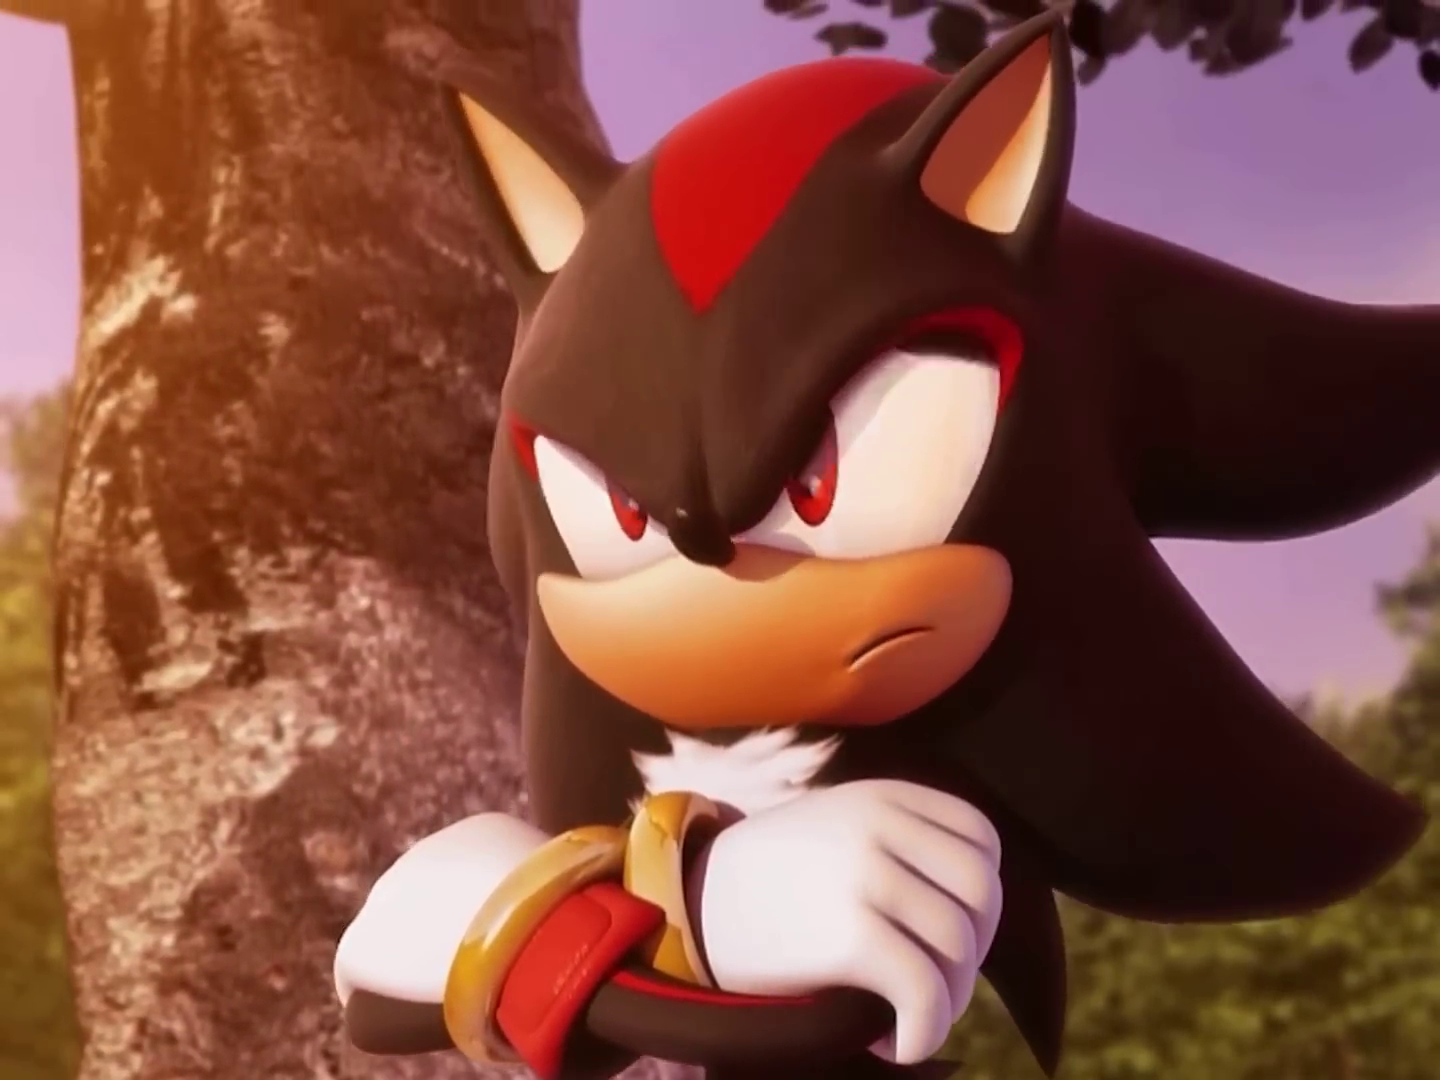 Shadow the Hedgehog Voice Redub [Sonic Boom] 